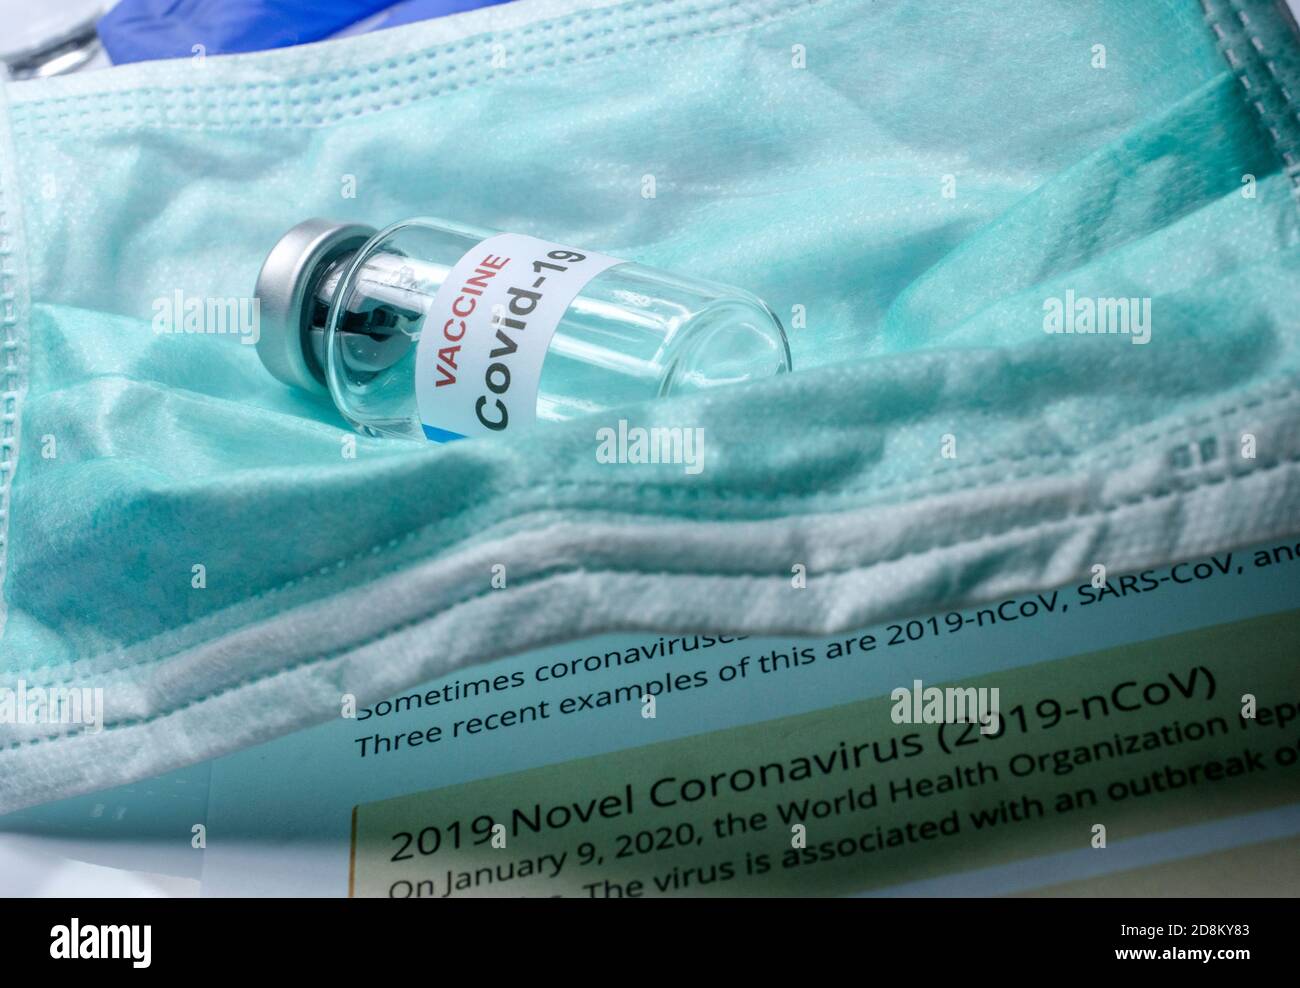 Vaccino contro il corovirus Covid-19 in un ospedale, immagine concettuale Foto Stock